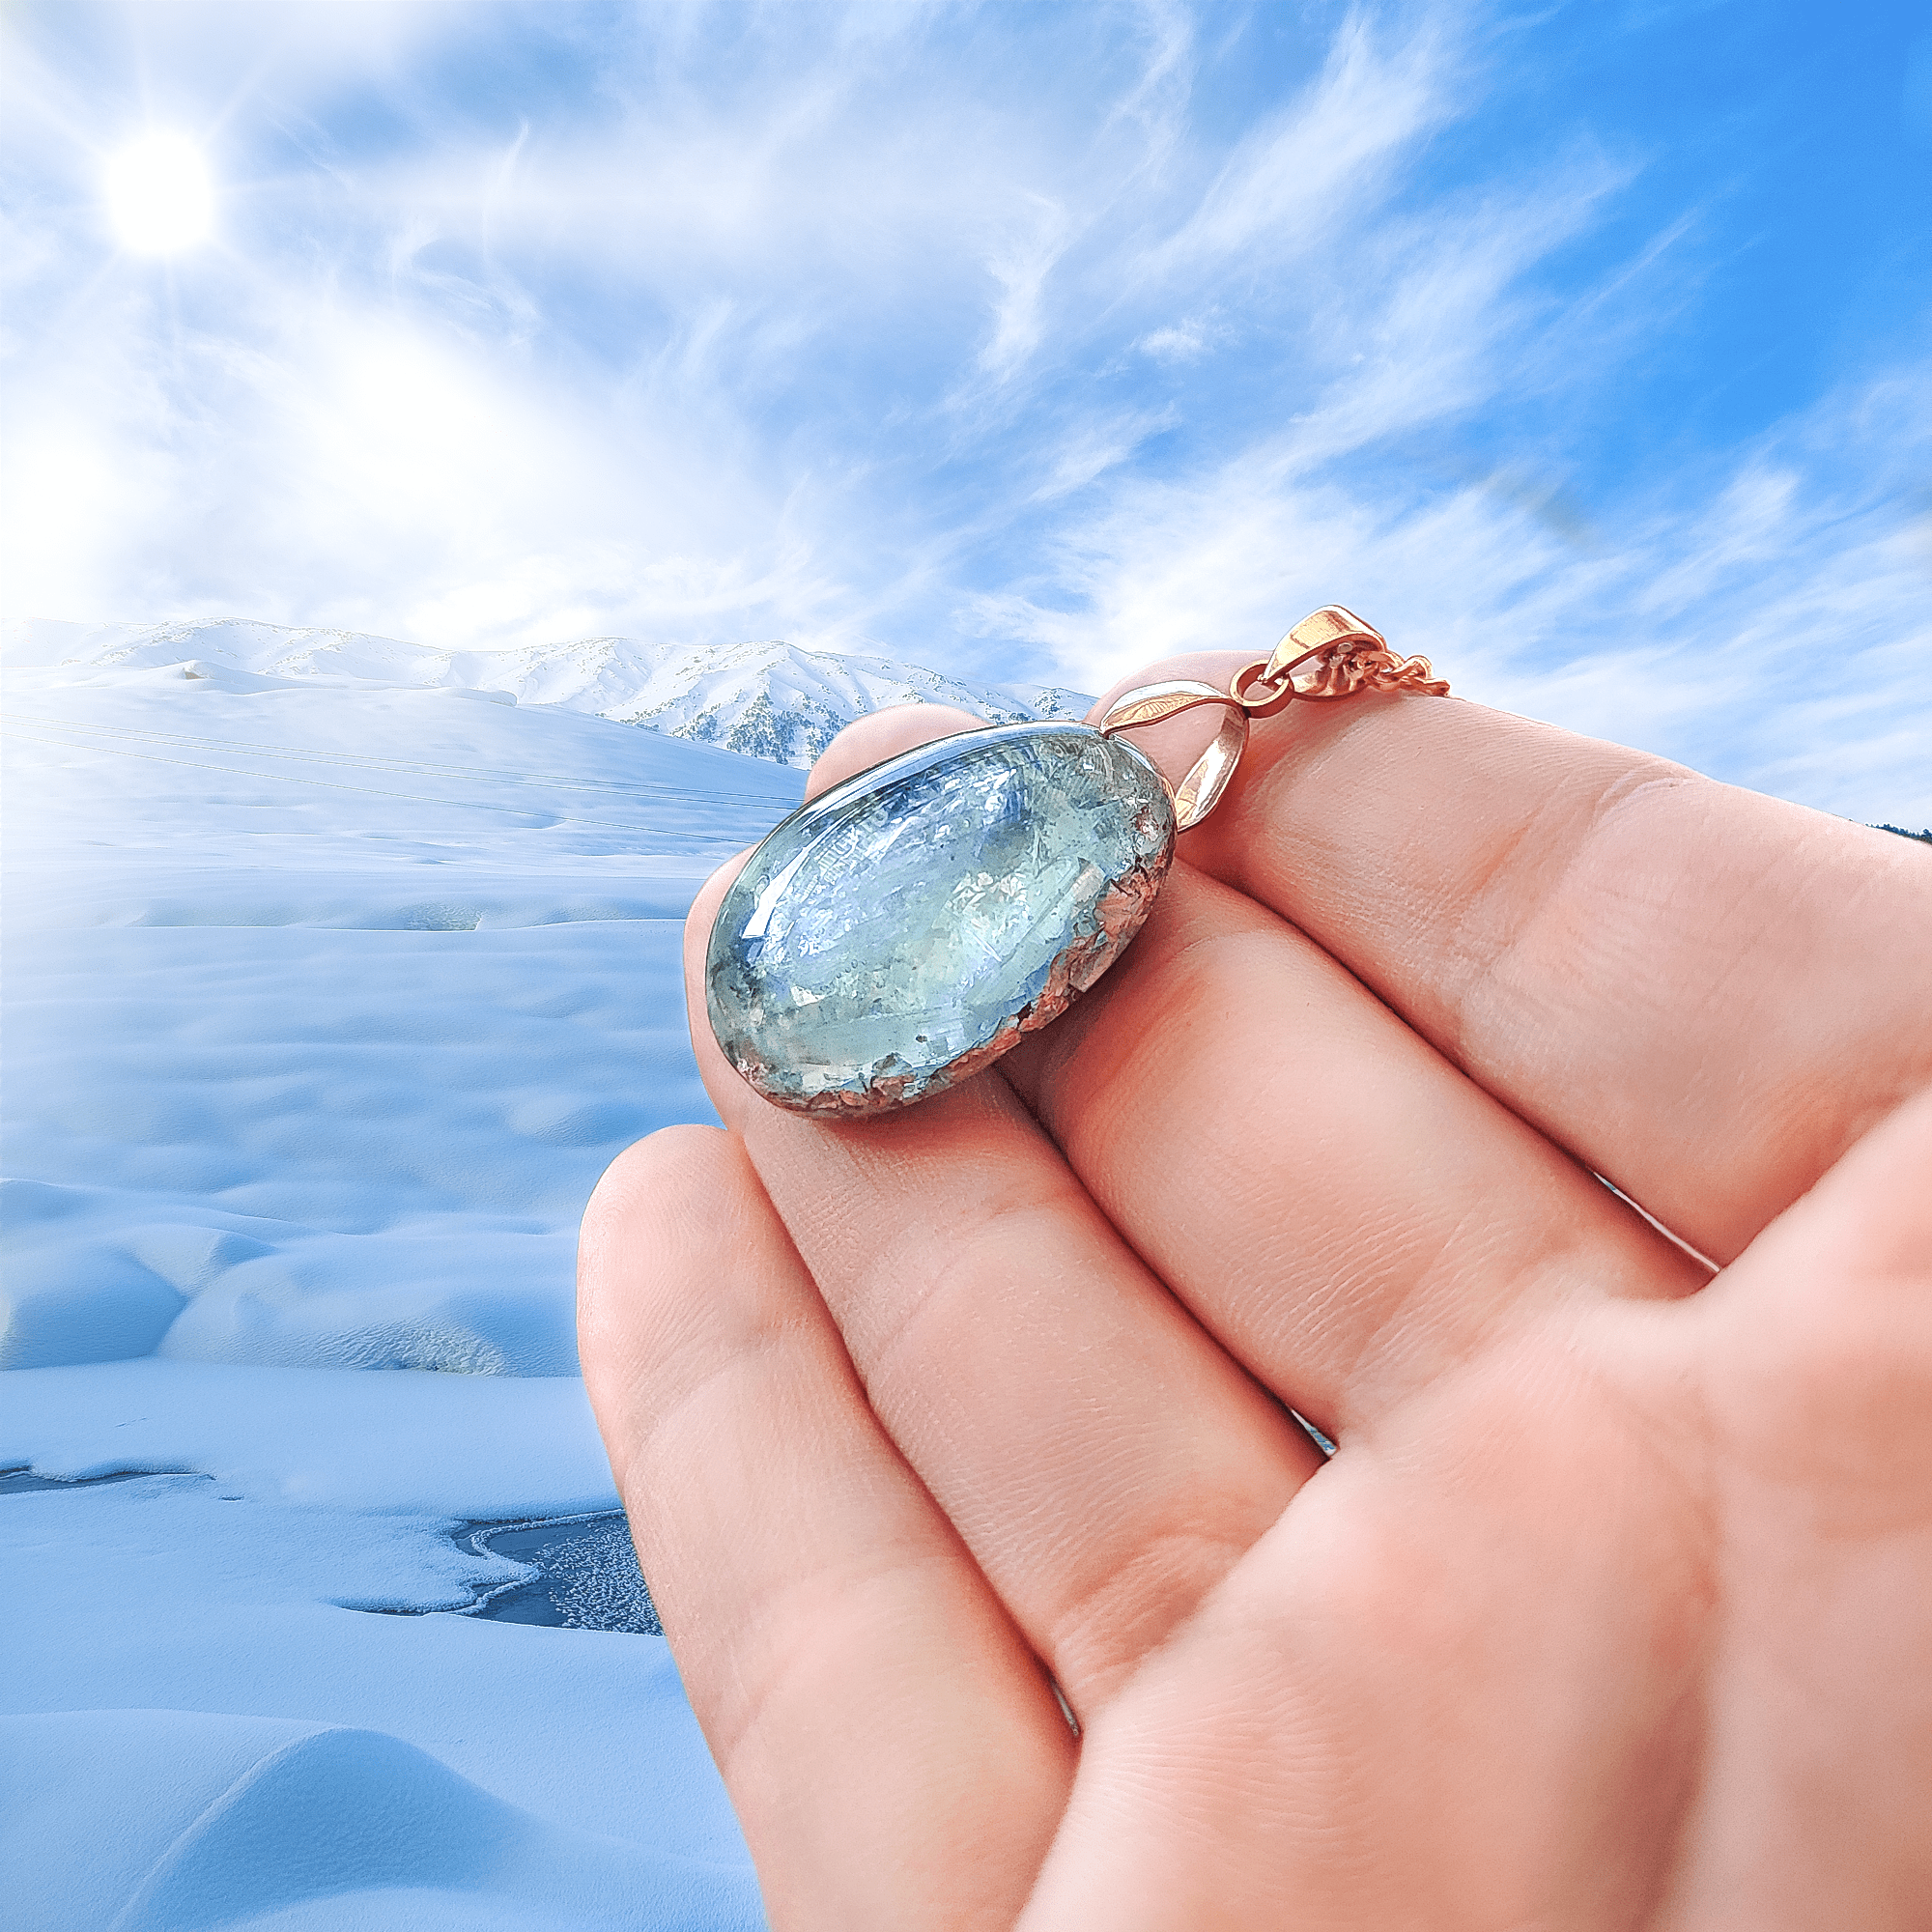 Ein eisblauer Orgonit Anhänger aus Edelsteinen, welcher in einer Schneebedeckten Umgebung ins Licht gehalten wird. Befestigt ist das Amulett an einer vergoldeten Kette.